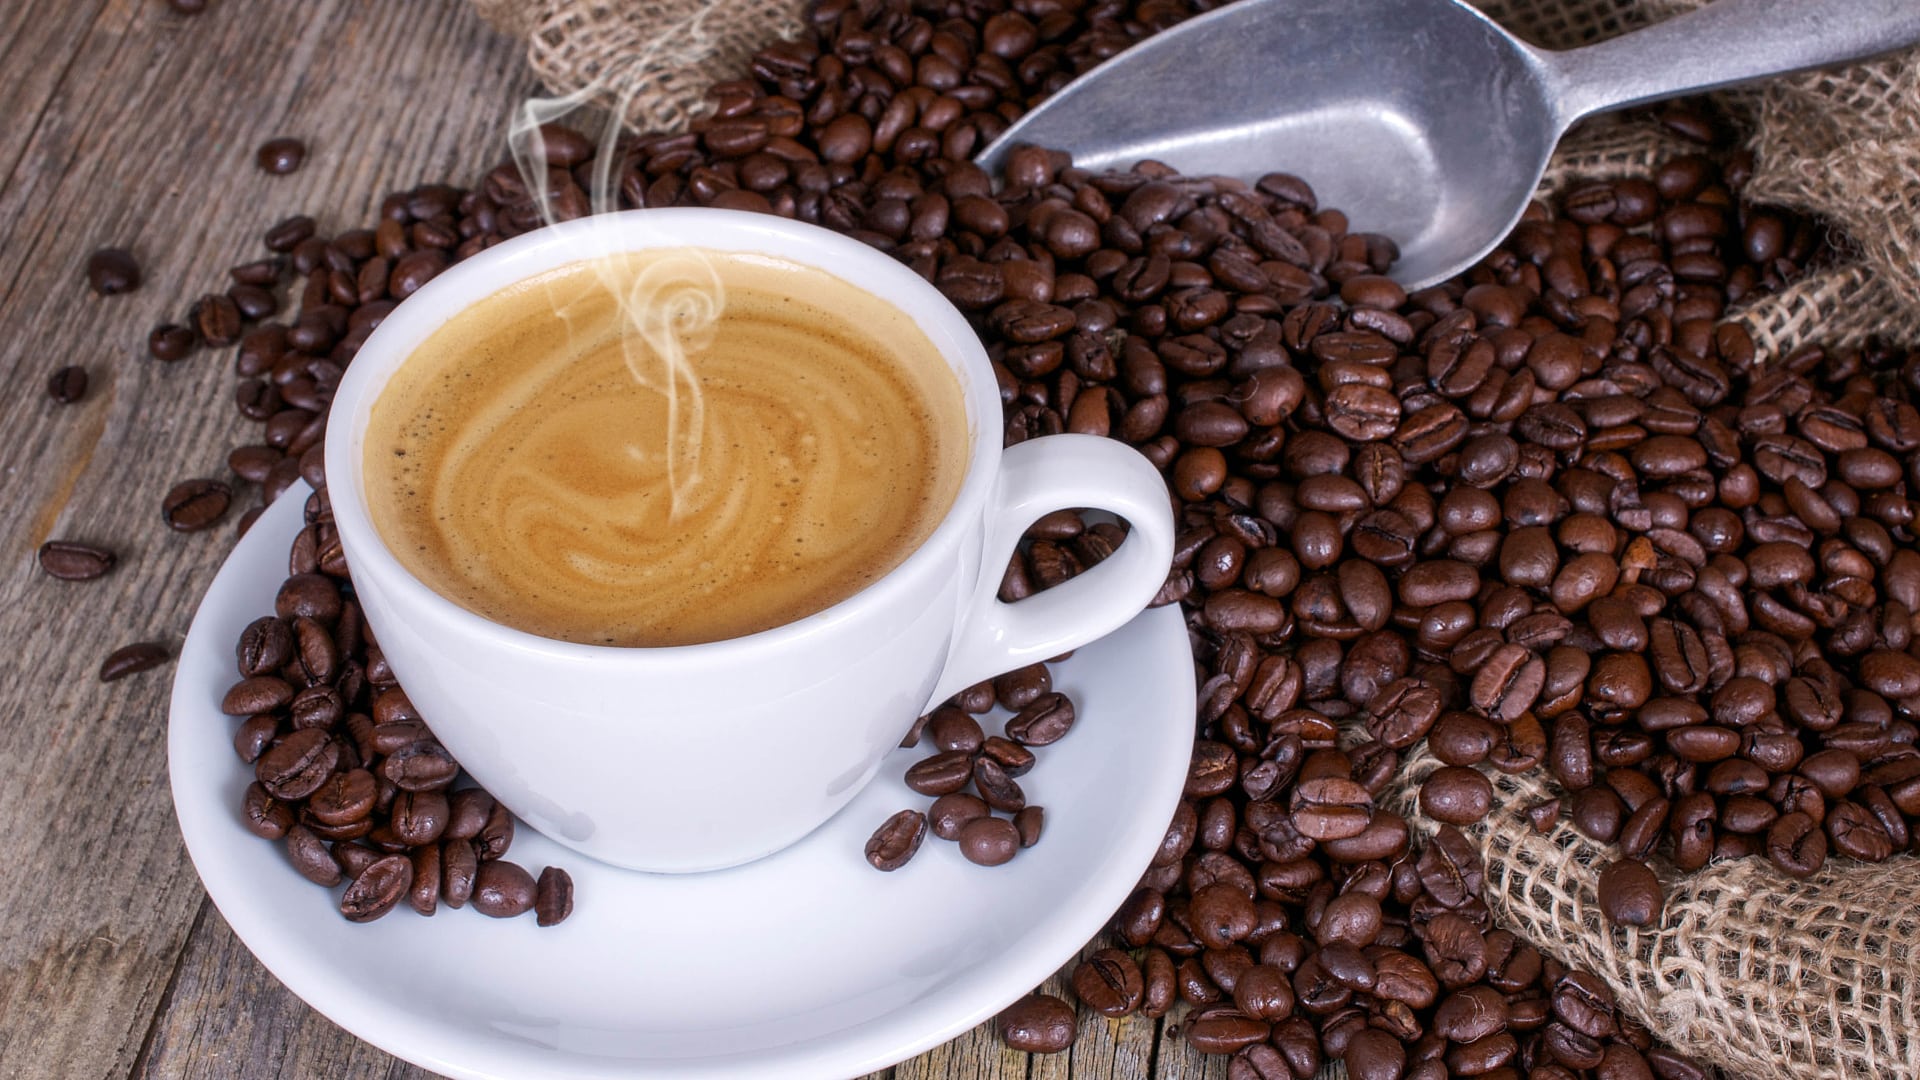 Ist Kaffee gesund oder ungesund?